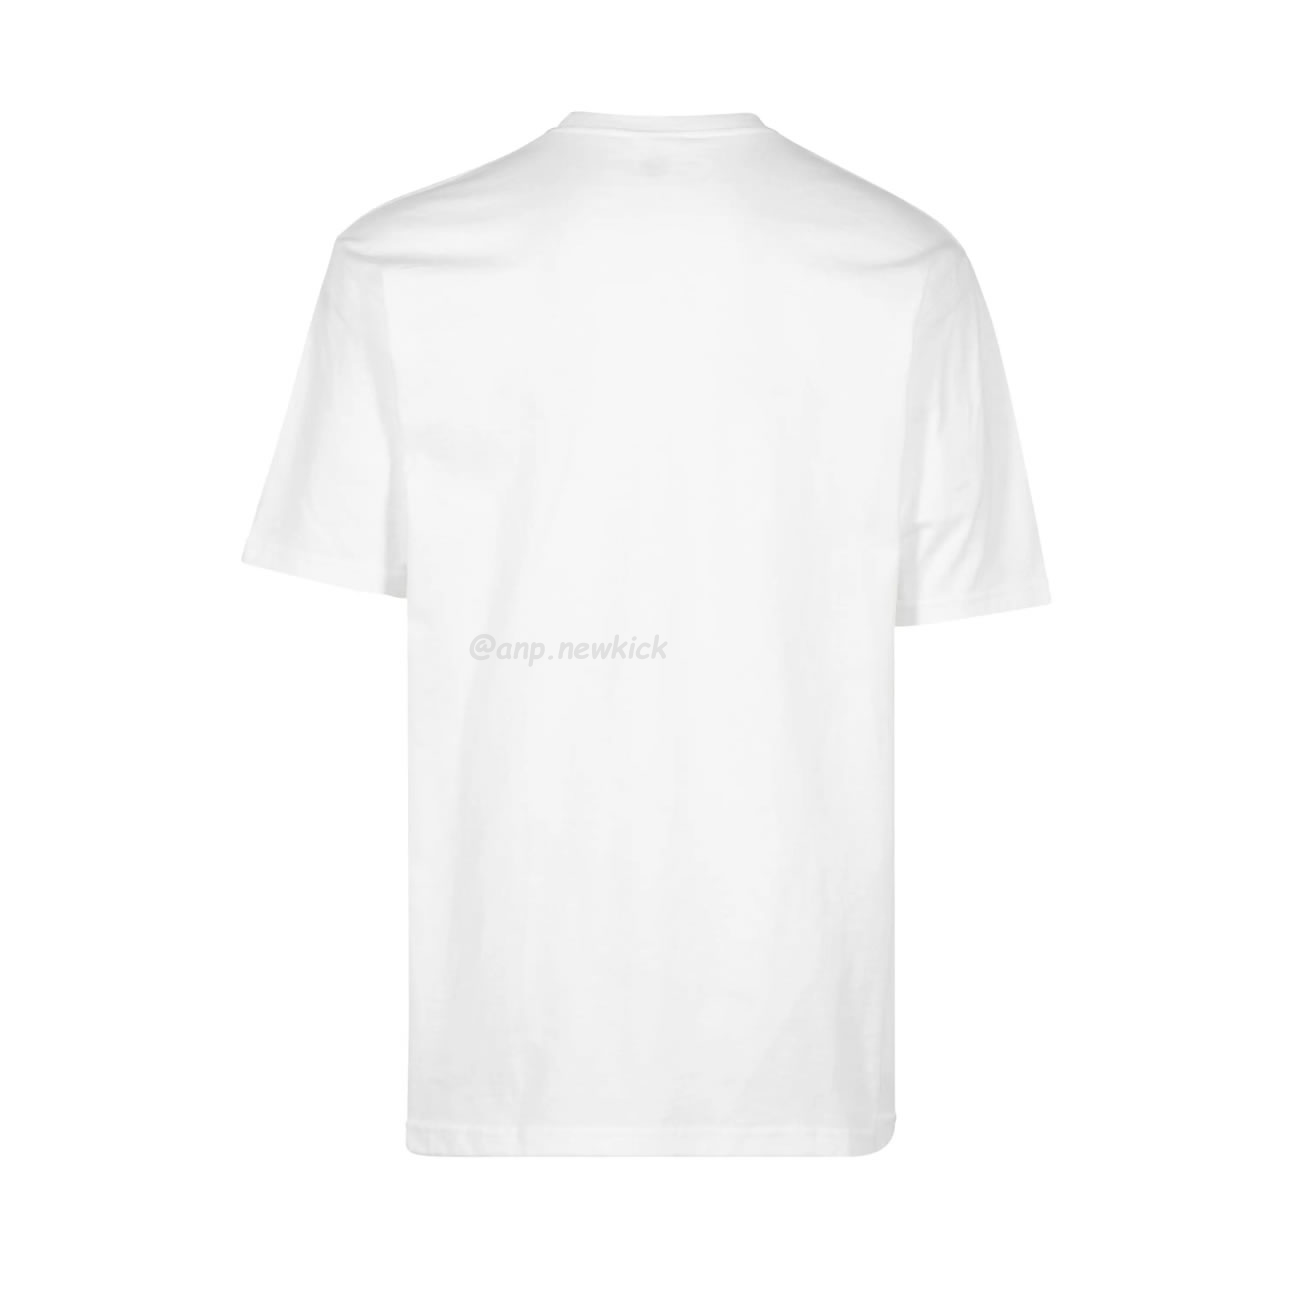 Supreme Box Logo Cotton White Navy Blackt Shirt (14) - newkick.org